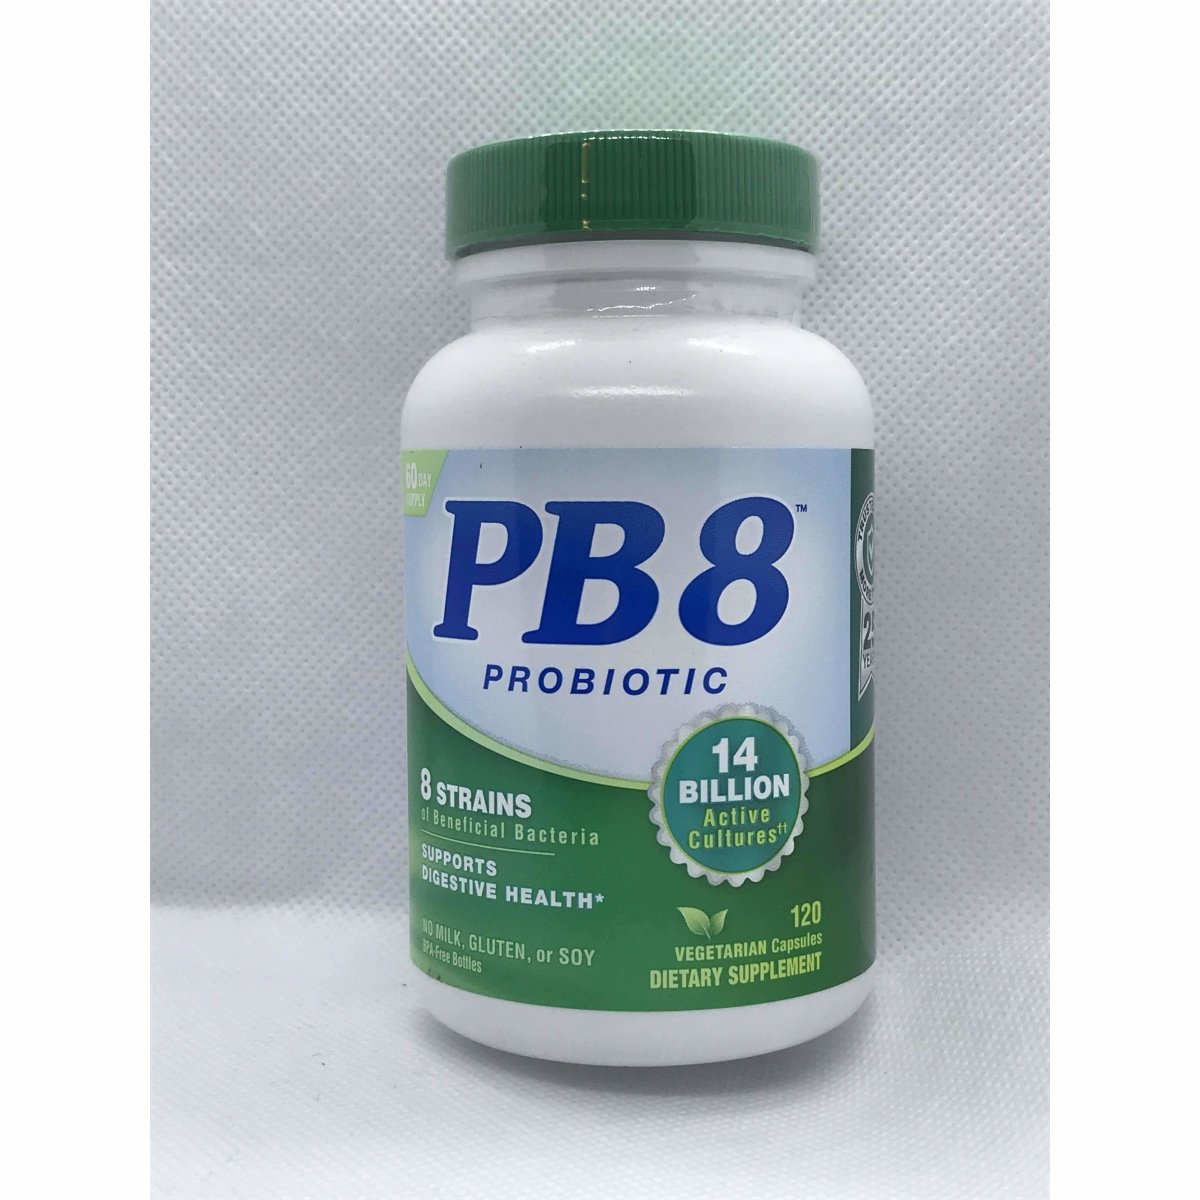 PB8 - Probiotic 120 Capsules No Gluten